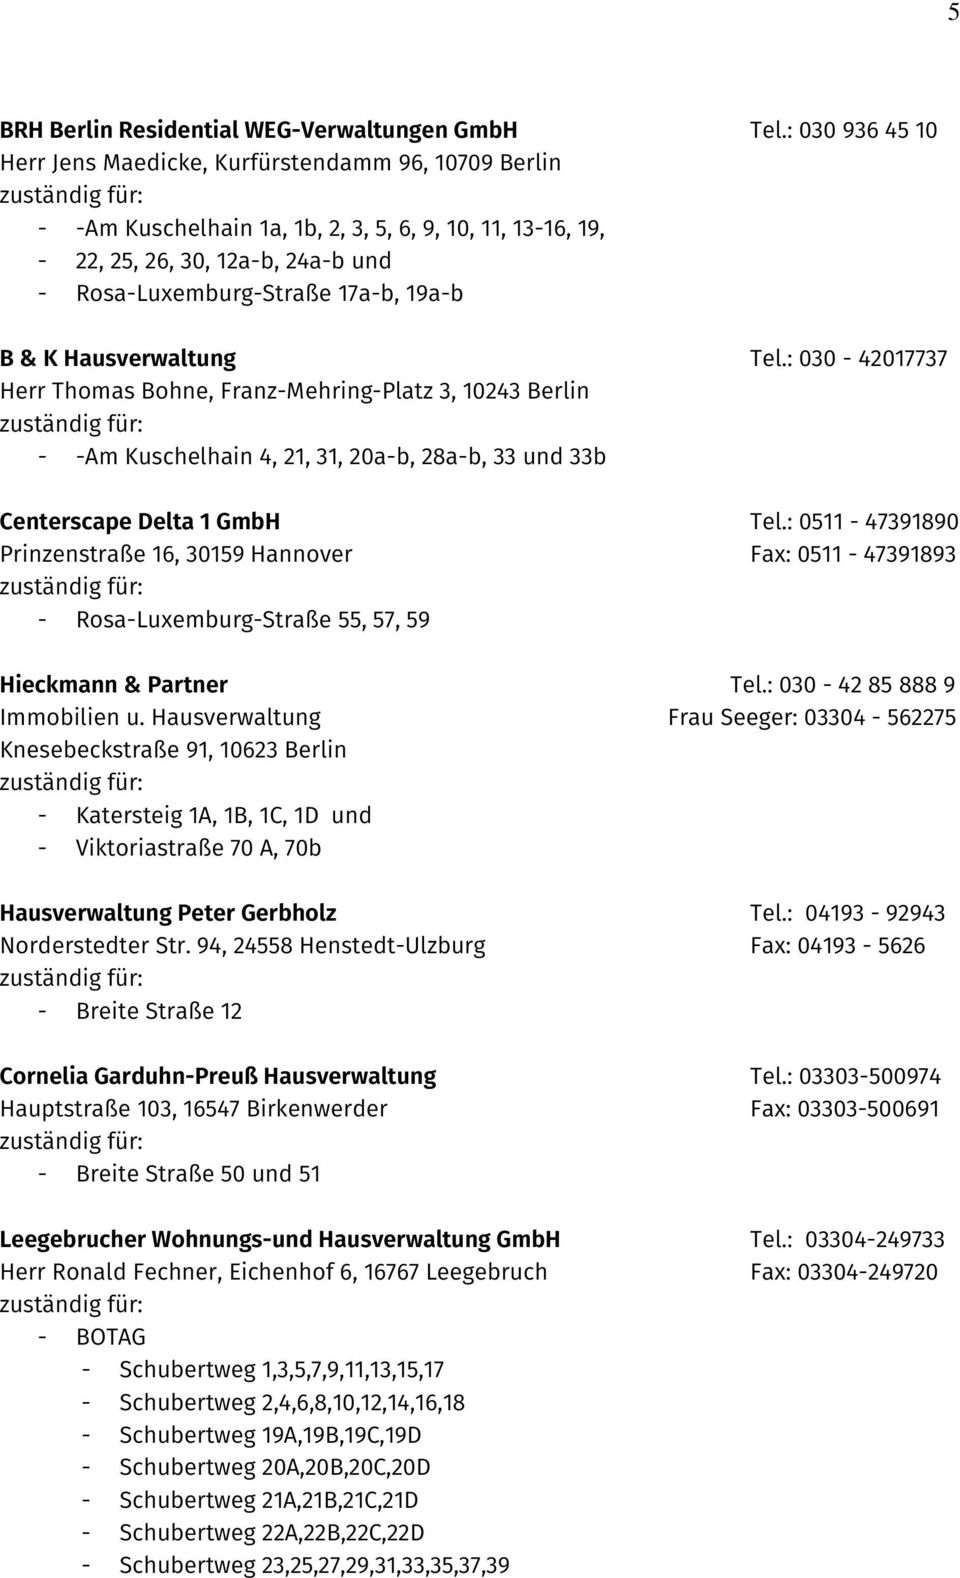 B & K Hausverwaltung Tel.: 030-42017737 Herr Thomas Bohne, Franz-Mehring-Platz 3, 10243 Berlin - -Am Kuschelhain 4, 21, 31, 20a-b, 28a-b, 33 und 33b Centerscape Delta 1 GmbH Tel.